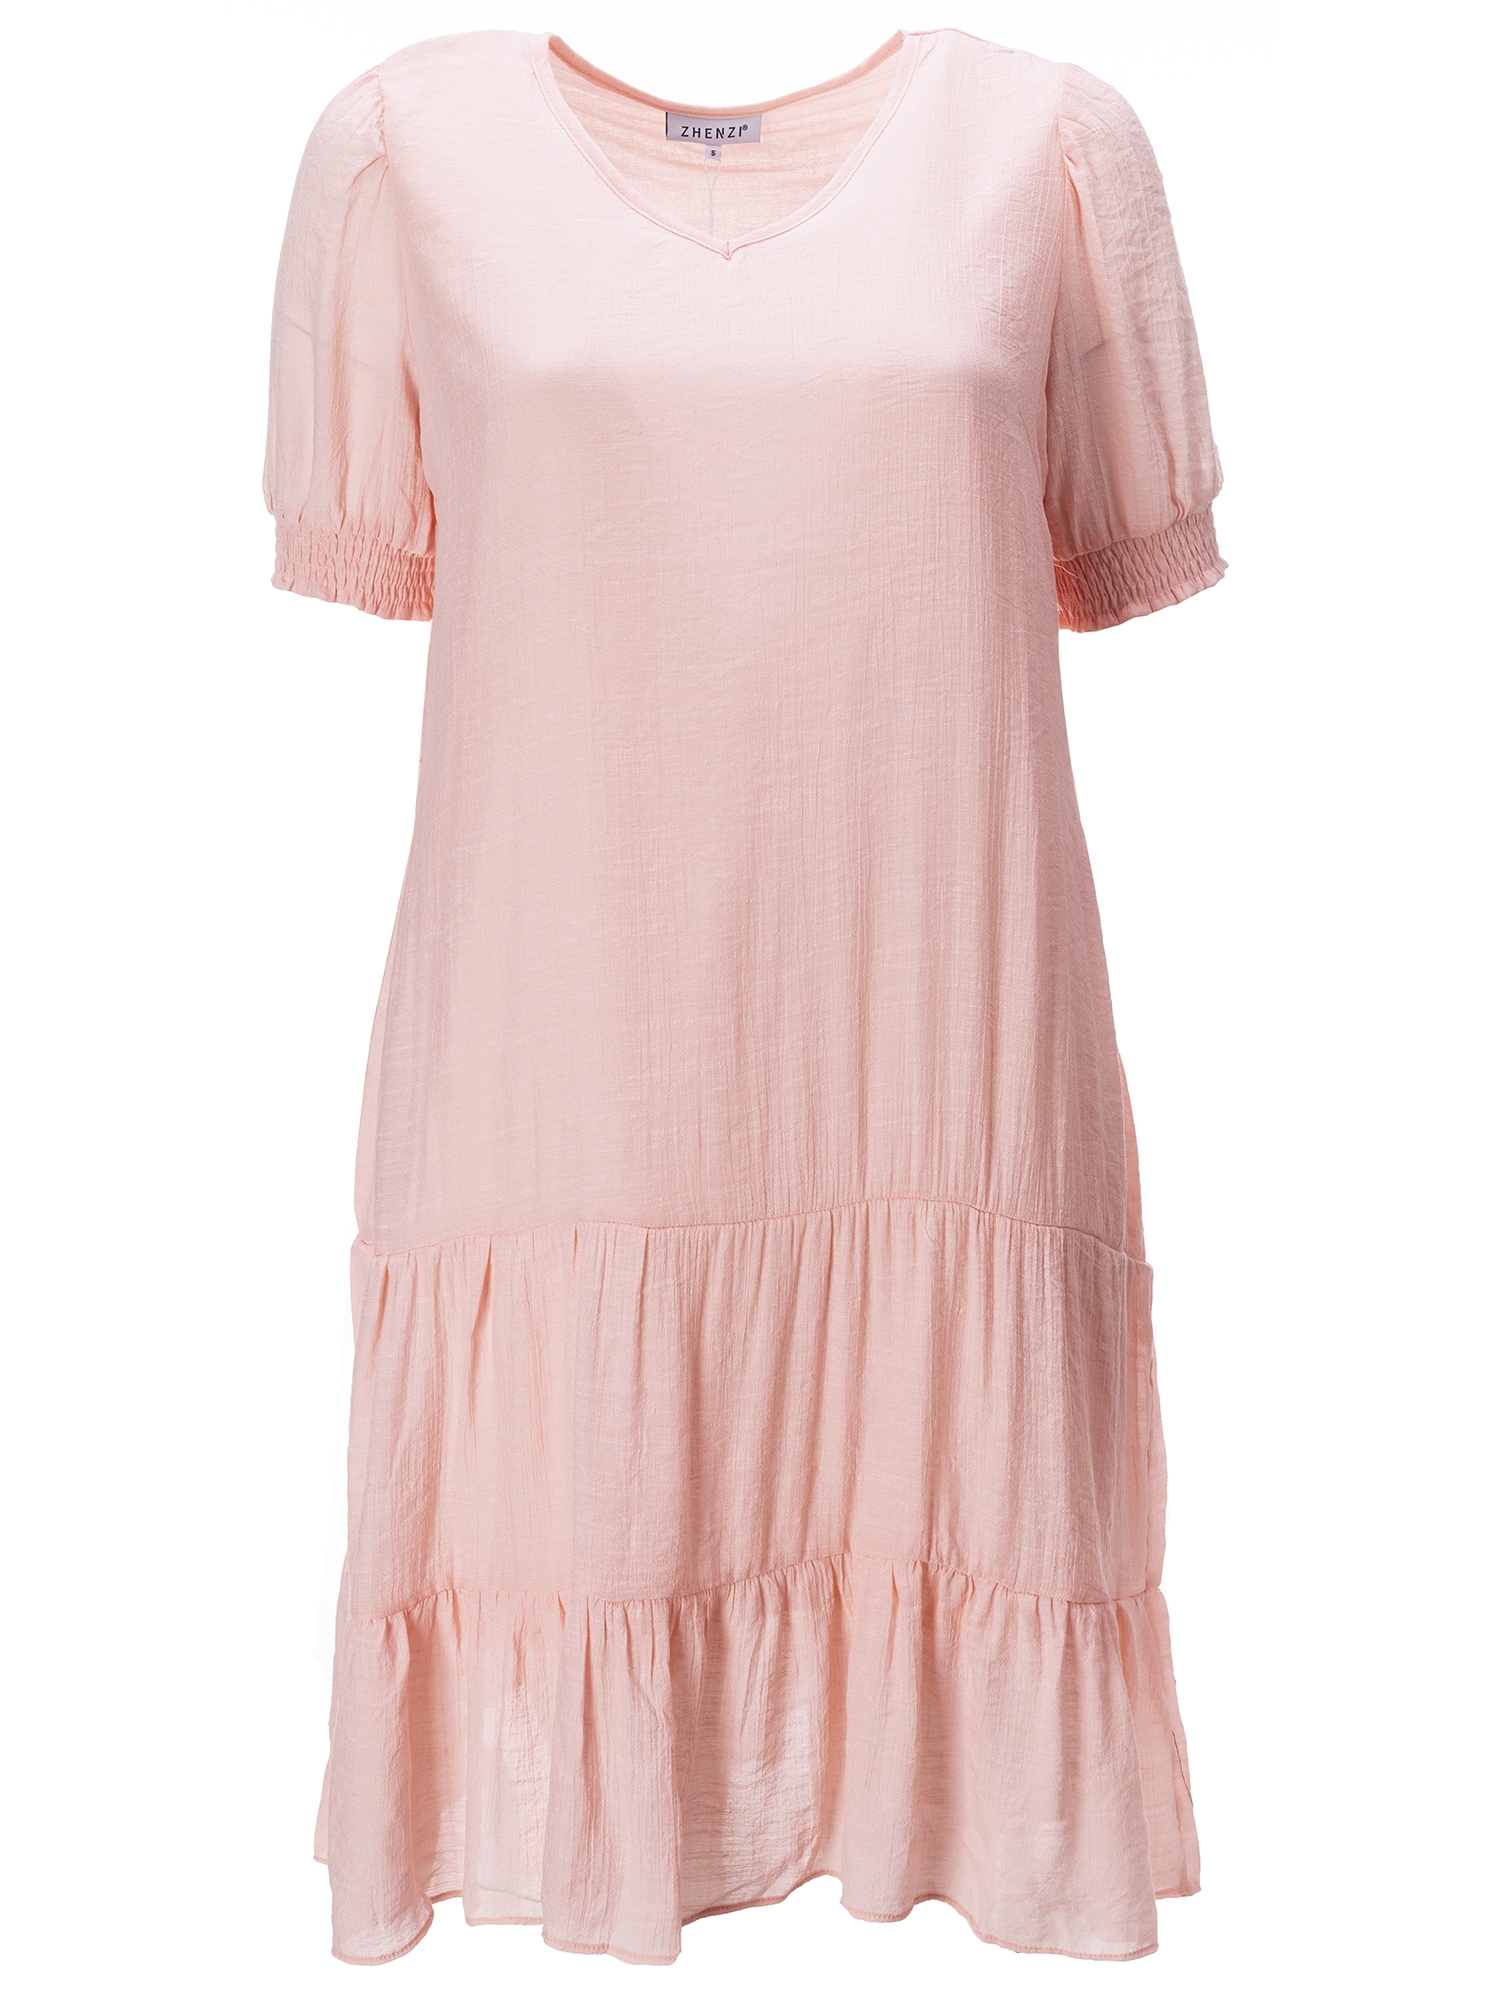 Billede af Lyserød kjole med flæser og bindebånd